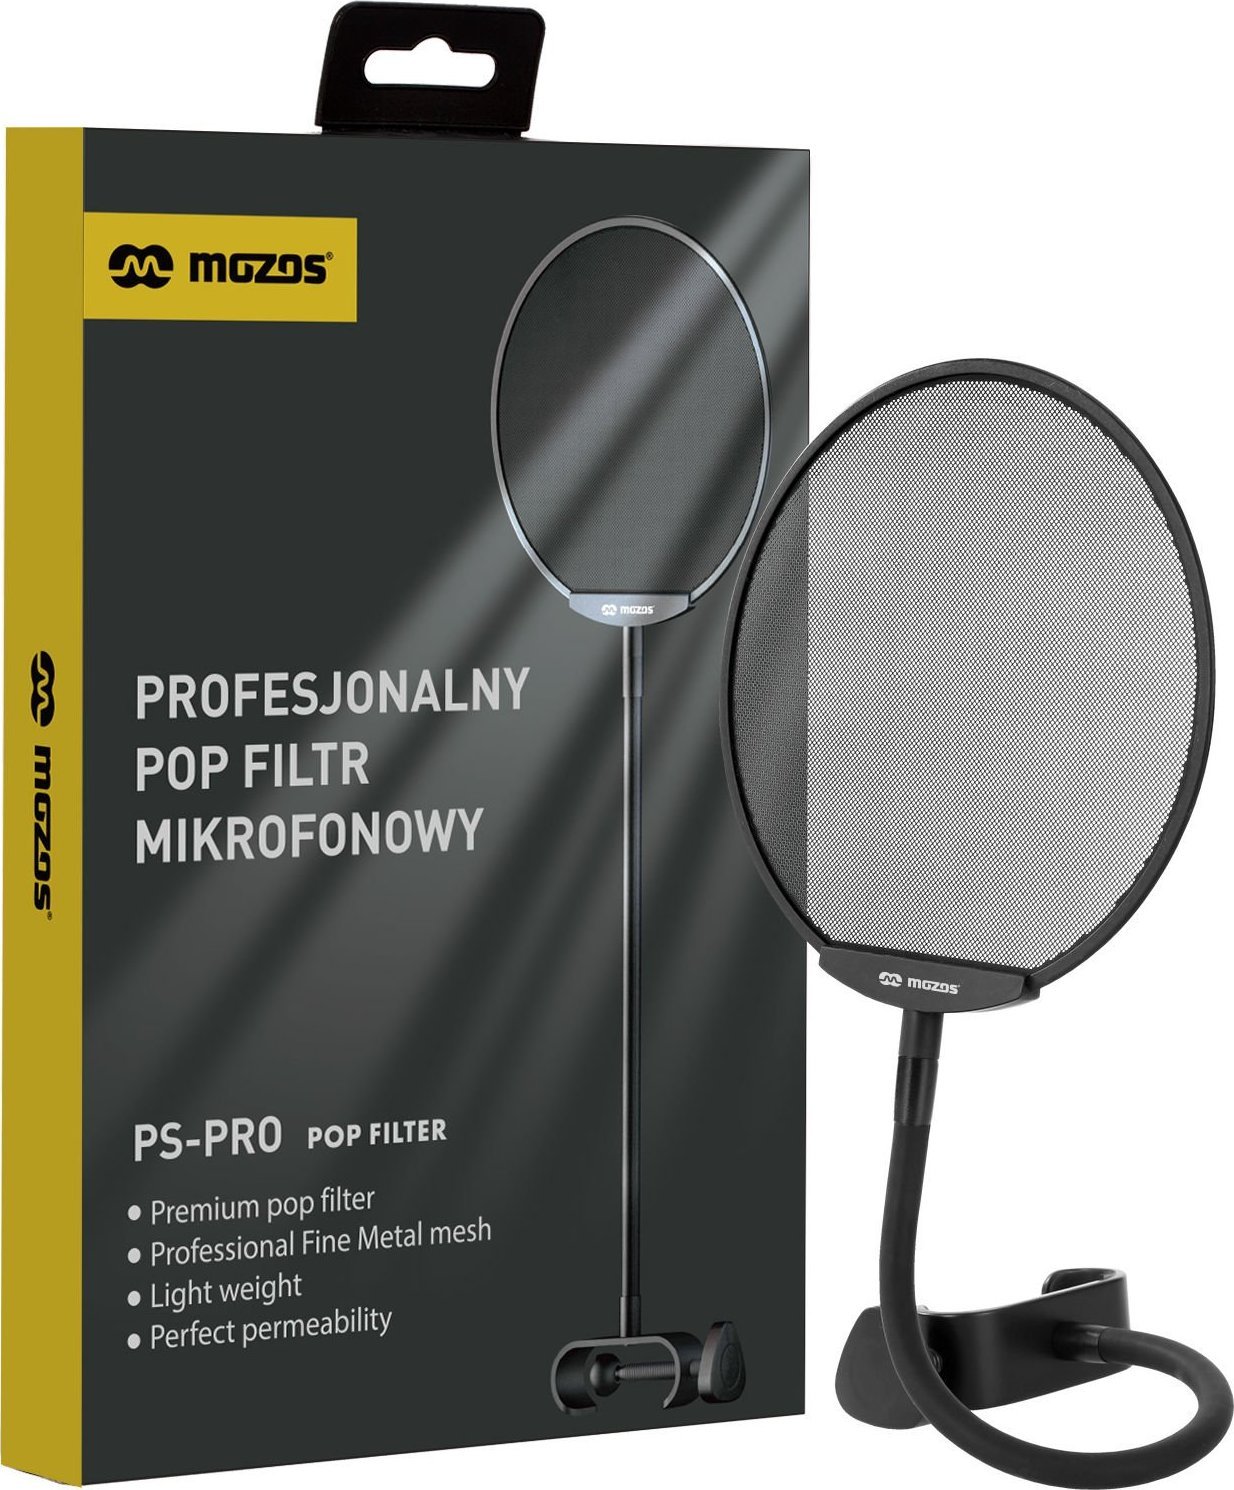 Mozos Popfiltr mikrofonowy PS-PRO Mikrofons